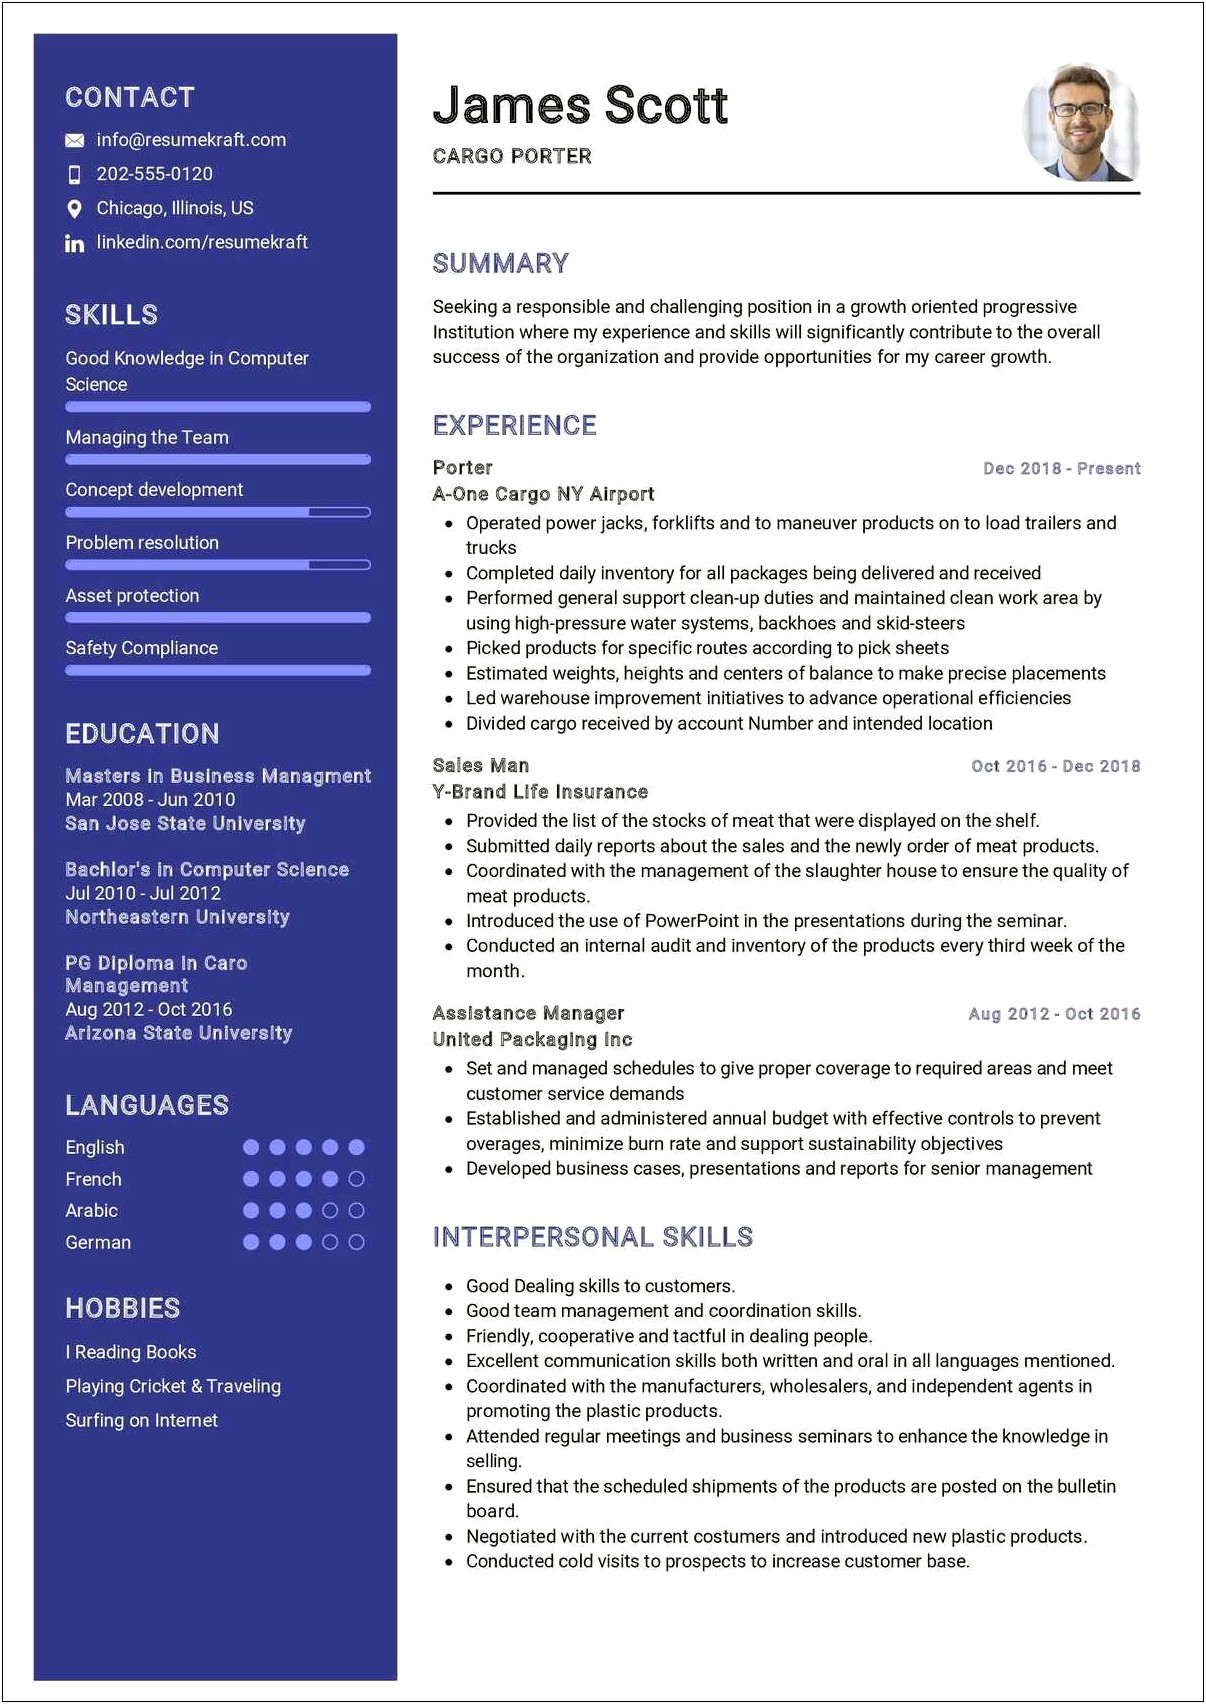 Job Description For Resume Porter